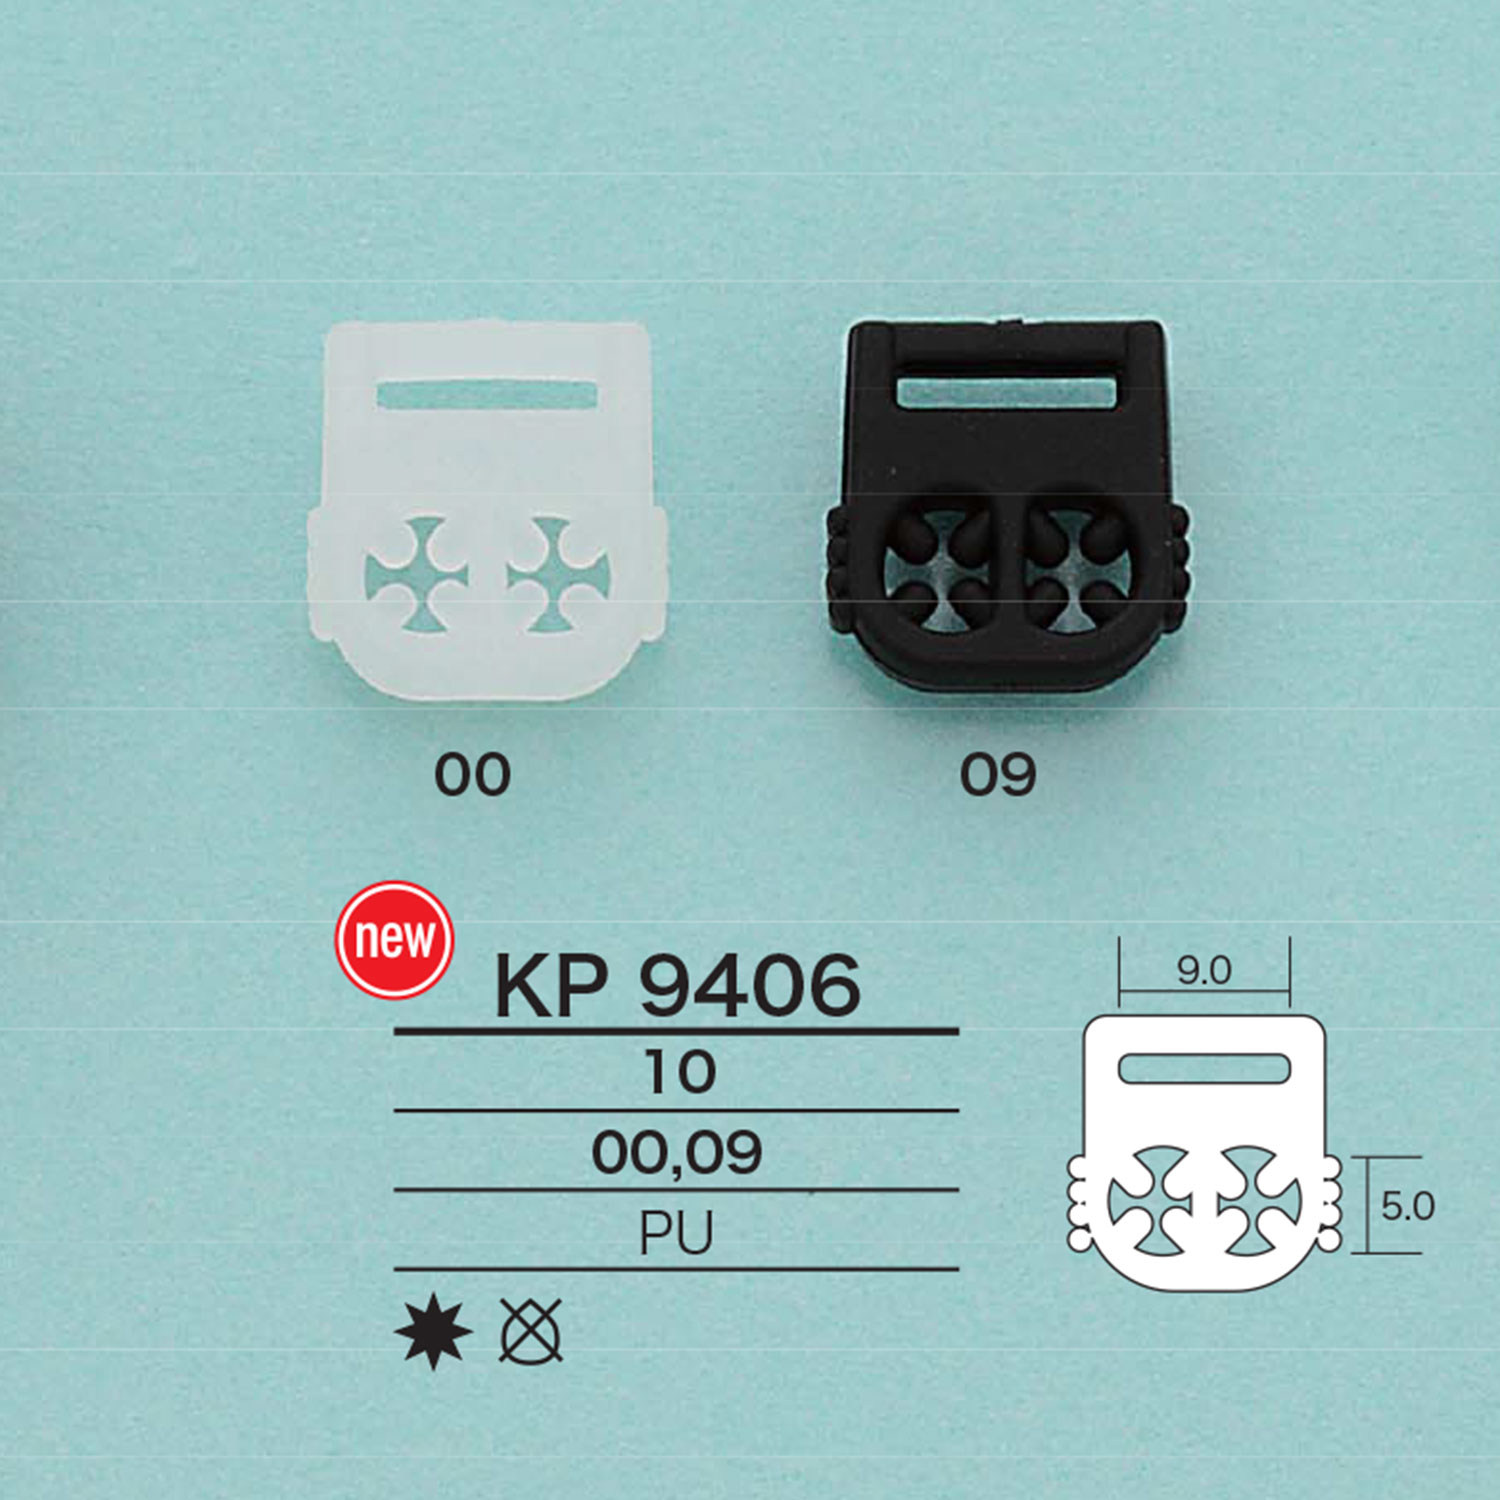 KP9406 绳子硬件[扣和环] 爱丽丝纽扣